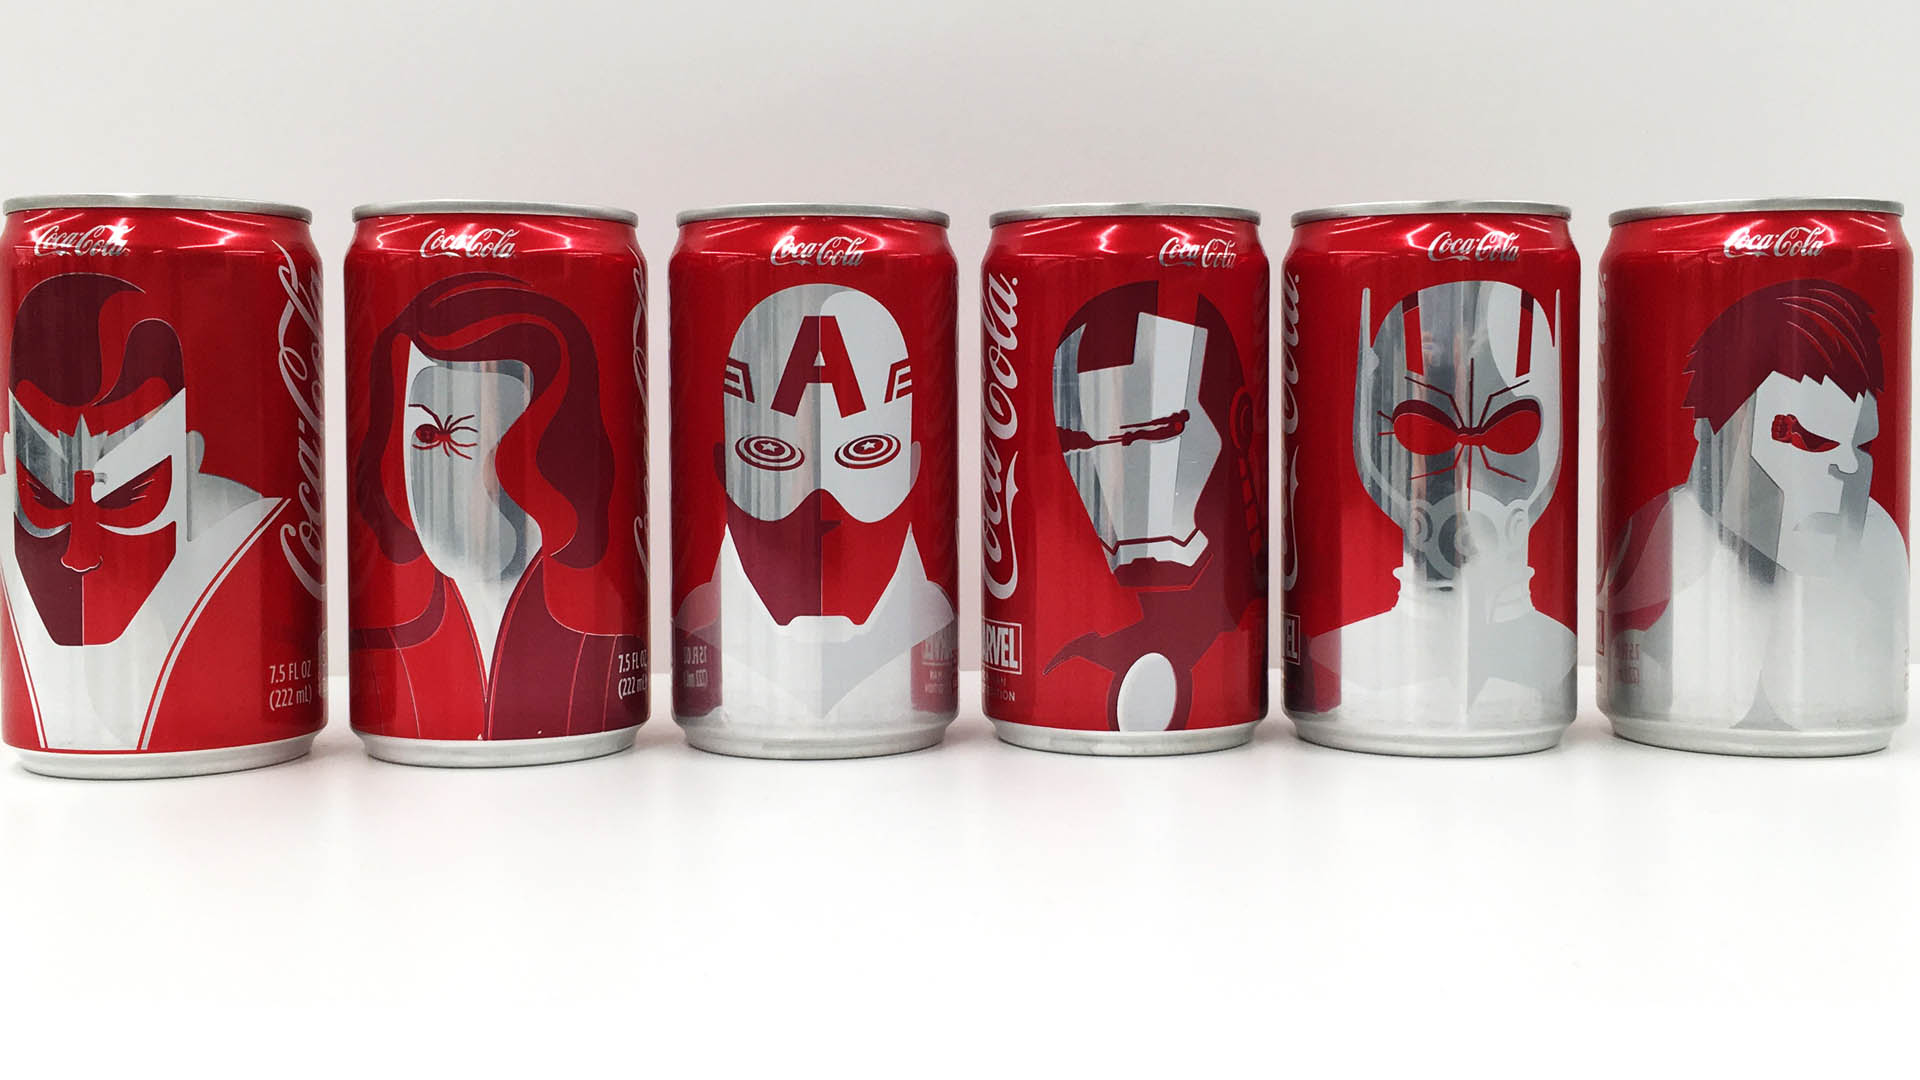 La famosa compañía de refrescos sacó una edición especial de latas que contienen a The Avengers